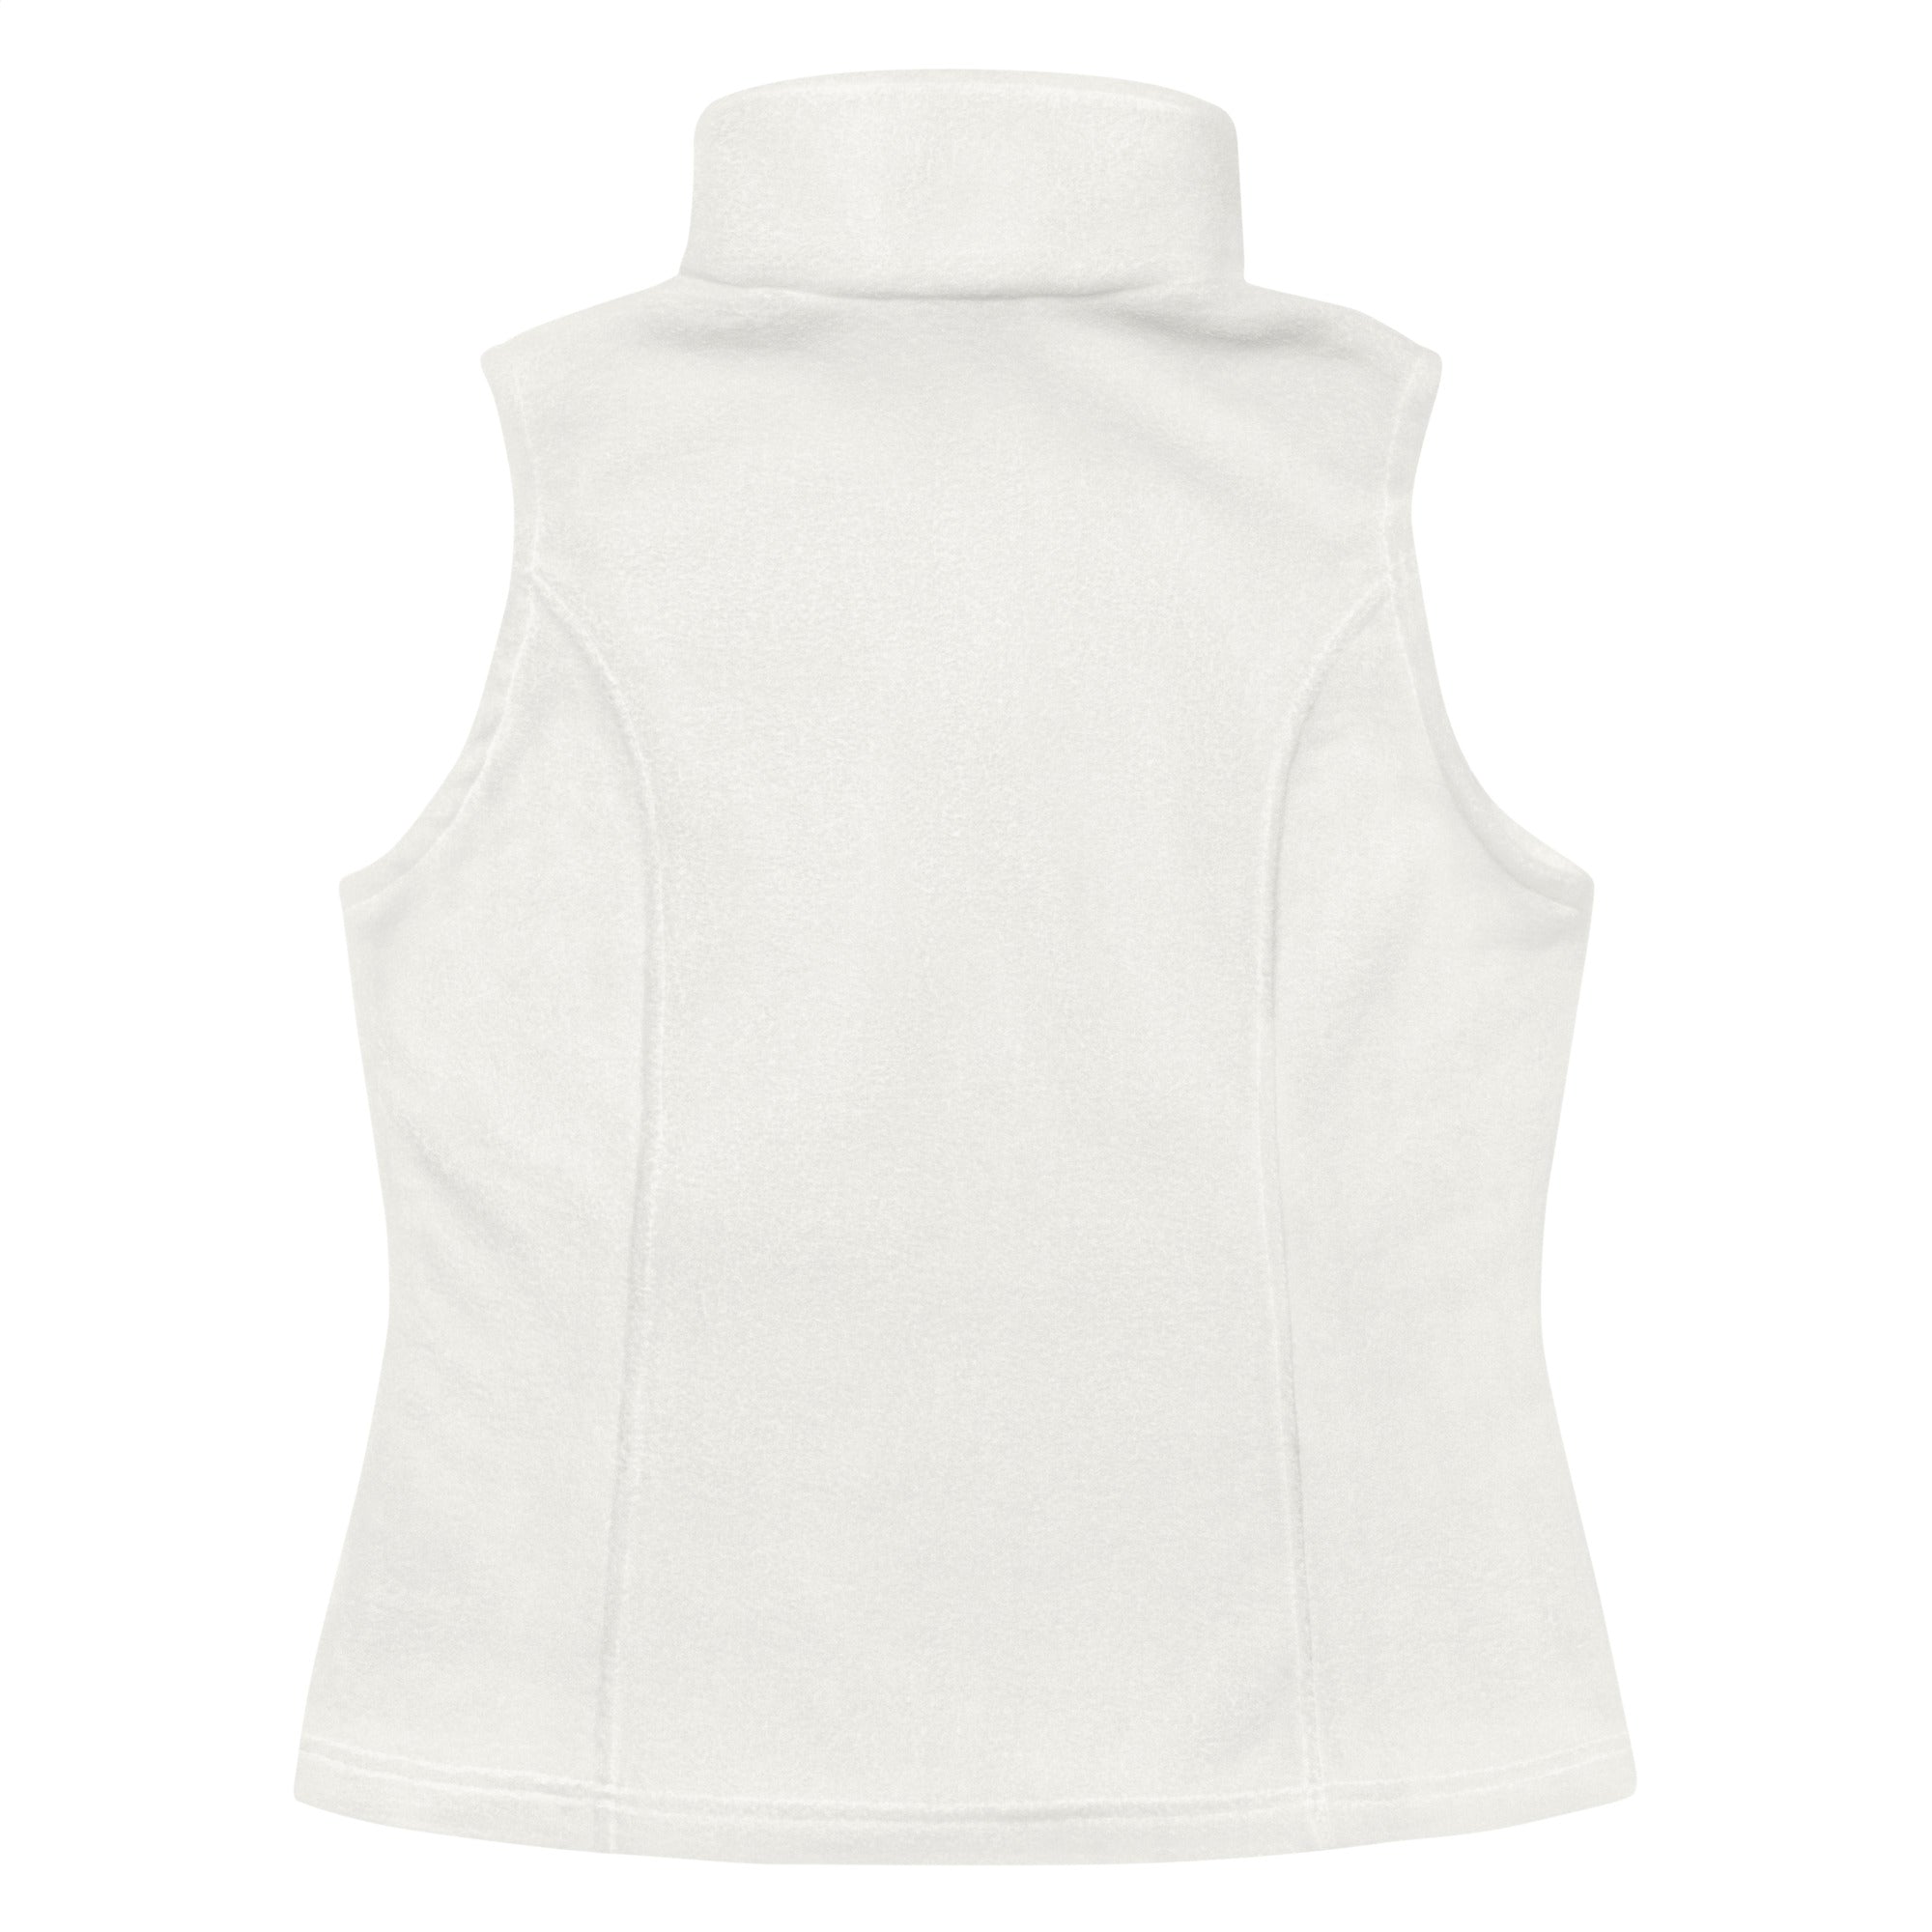 AACMSD Women’s Columbia fleece vest